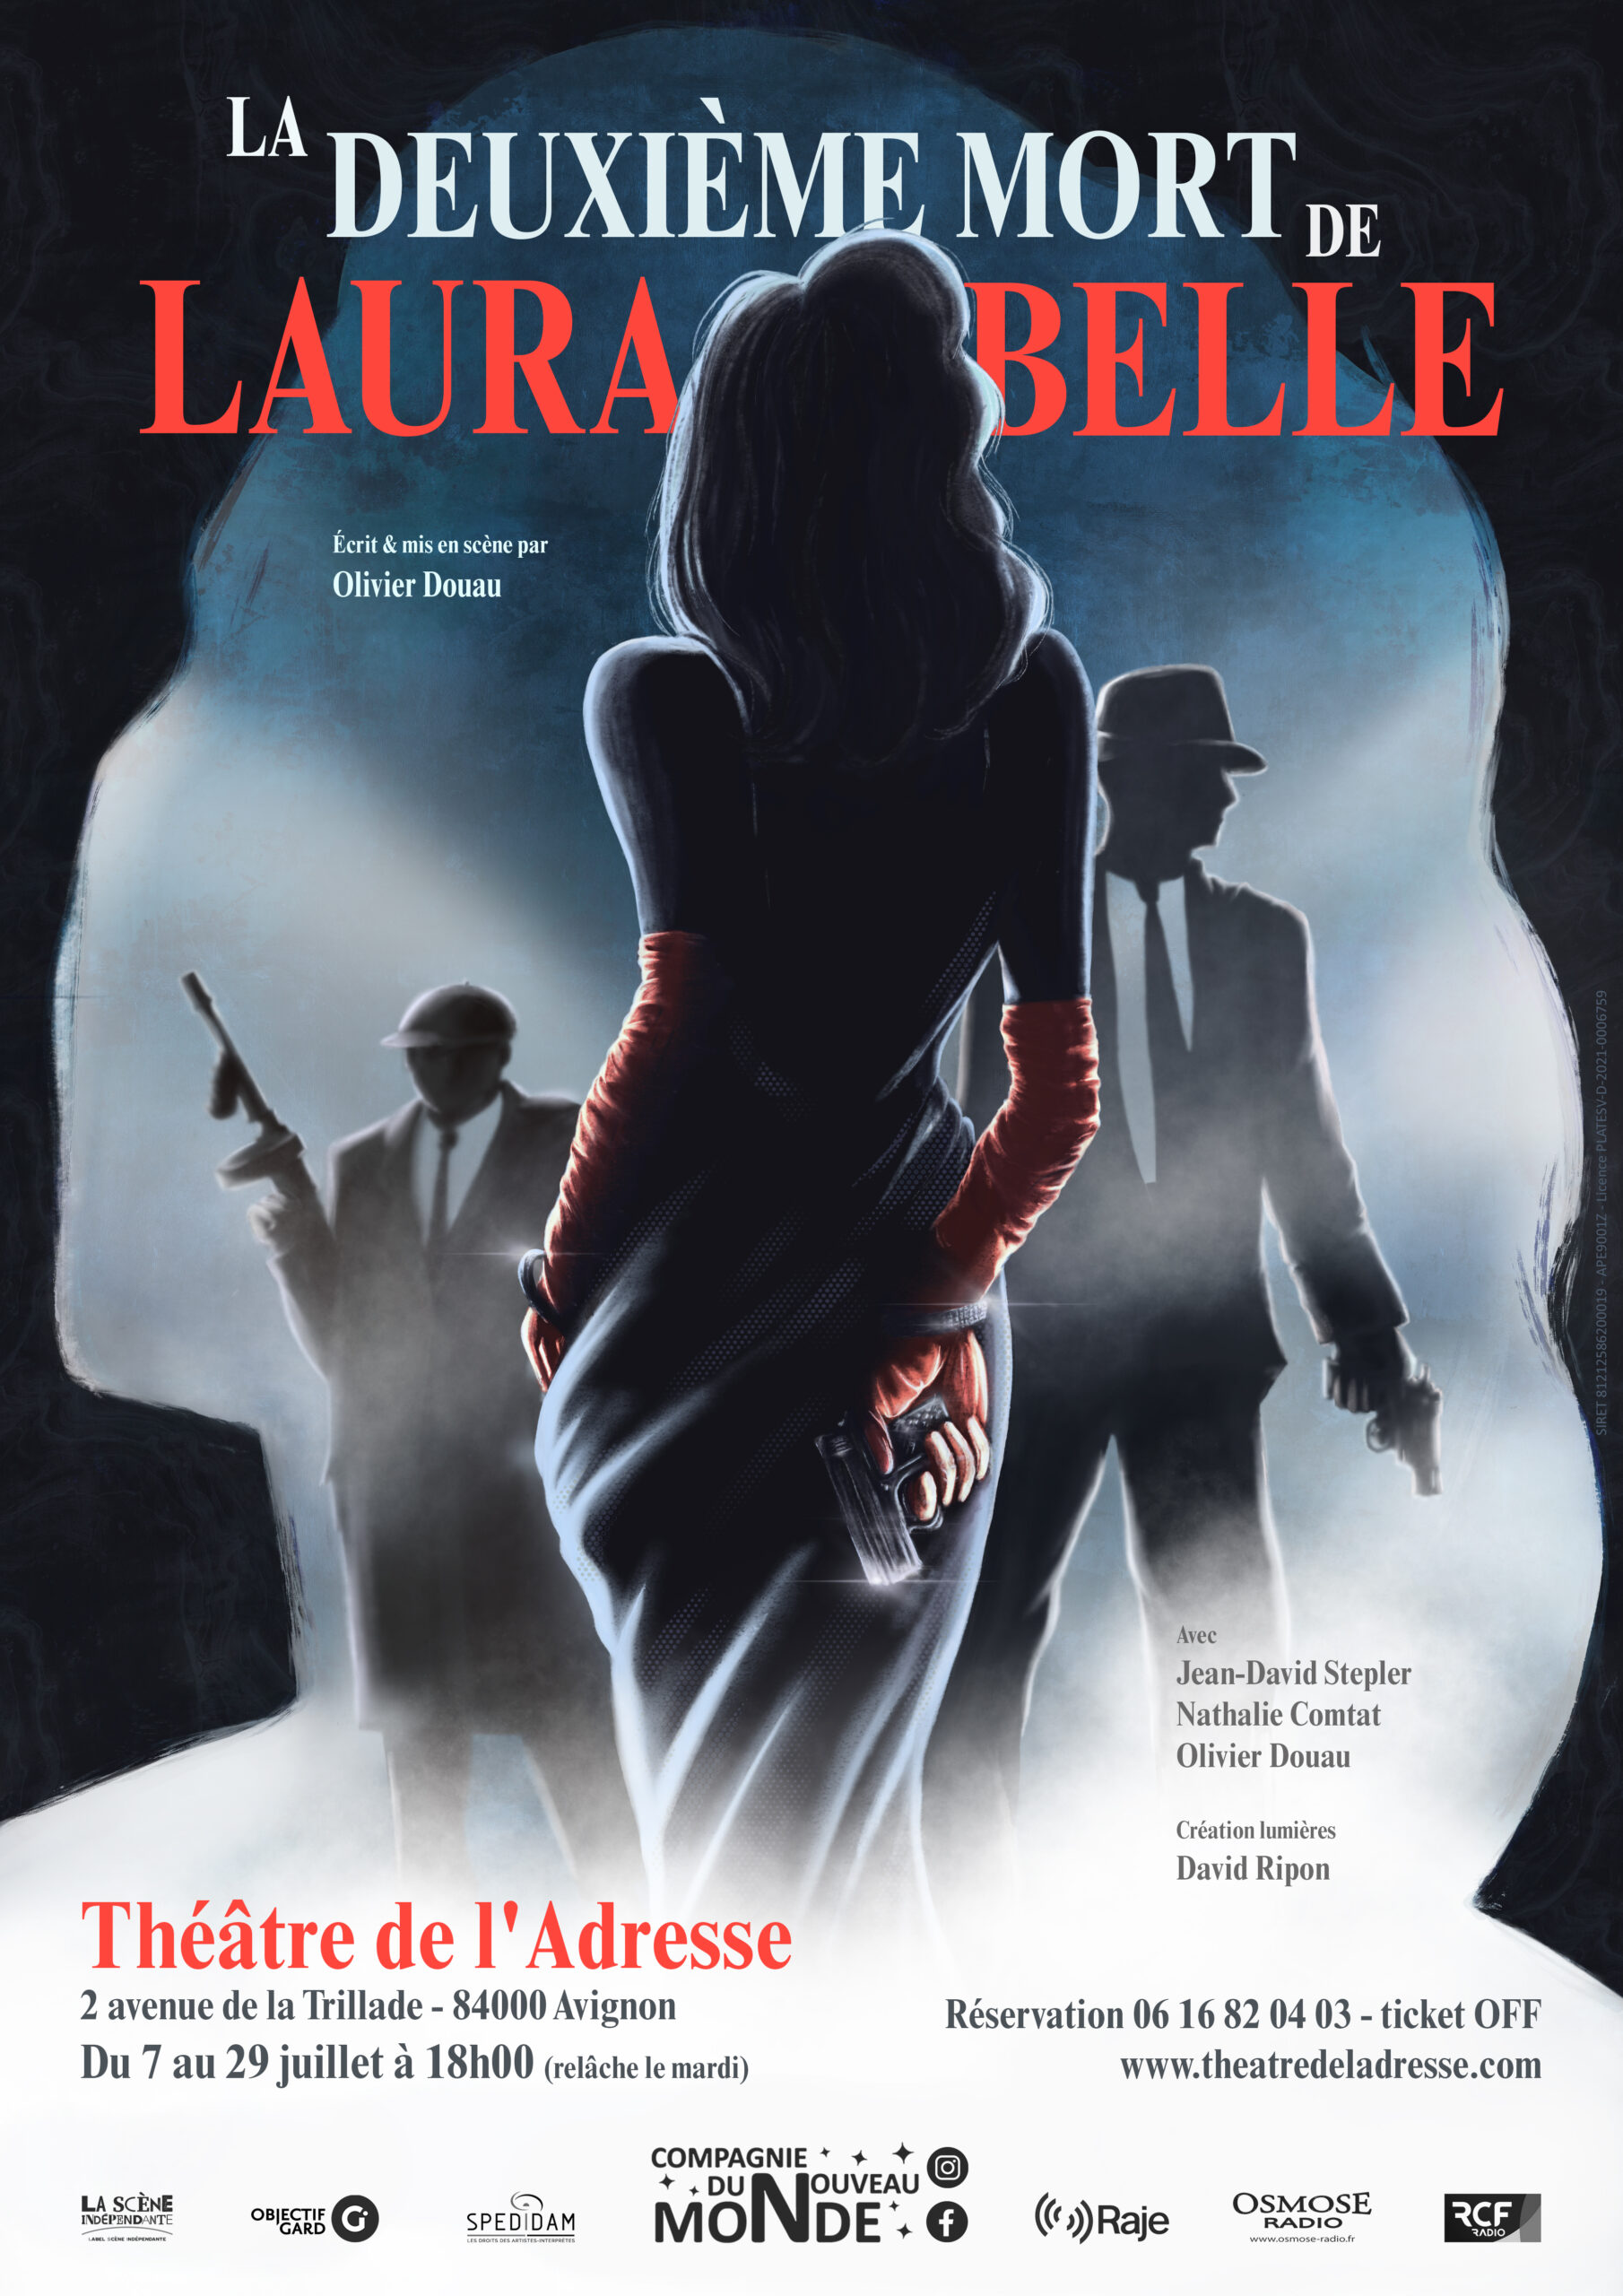 Affiche Laura Belle A3 Infos v5 2 1 scaled "La deuxième mort de Laura Belle": Un trio qui fonctionne bien